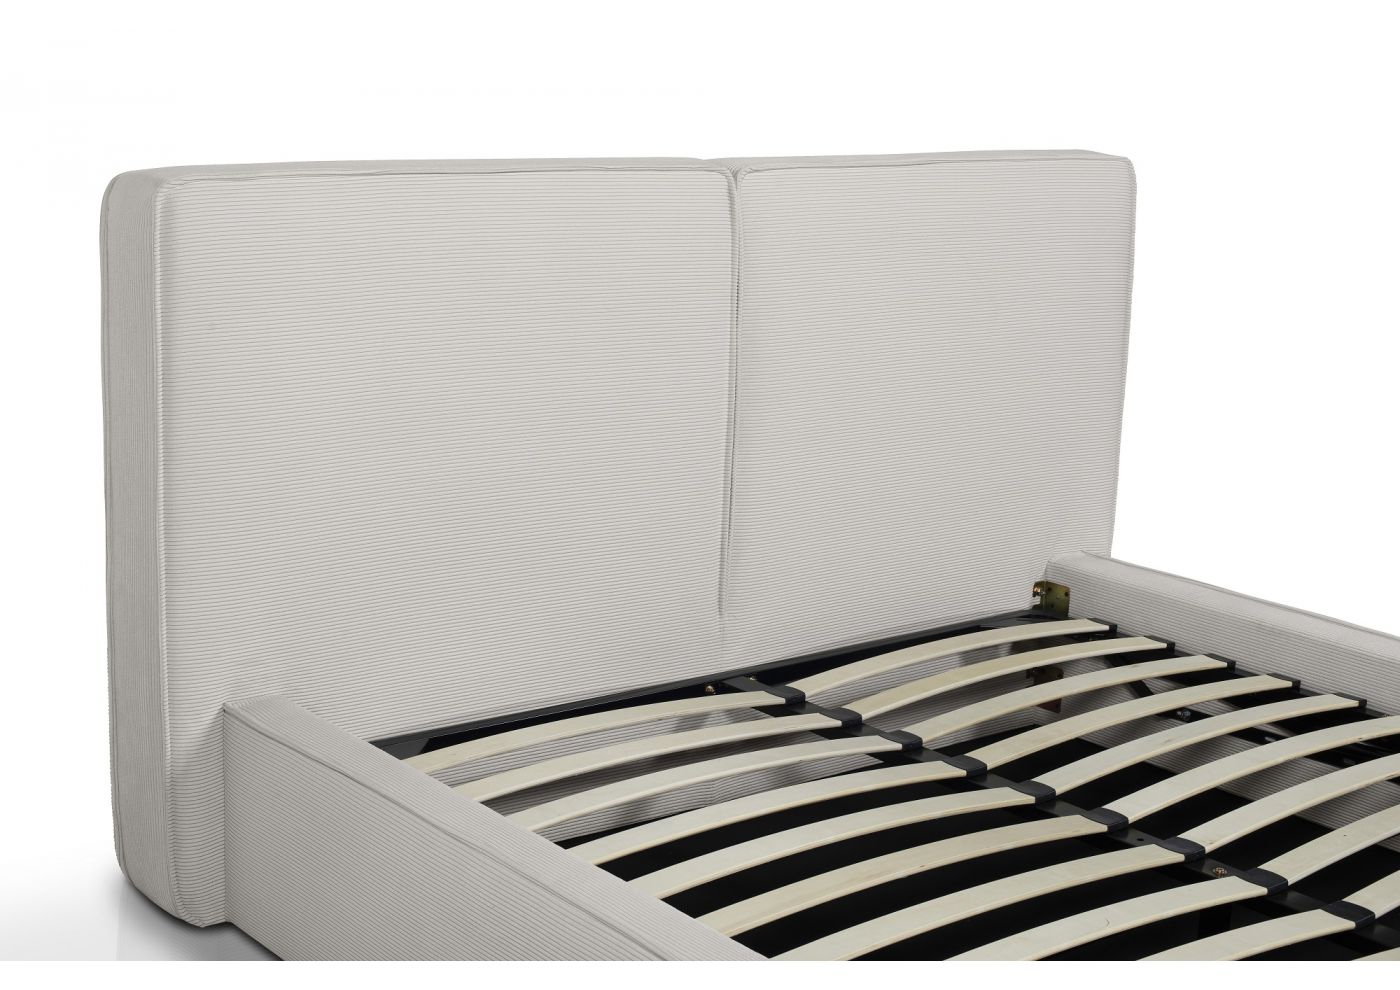 LEOPOLD lit coffre velours côtelé blanc cassé 160x200